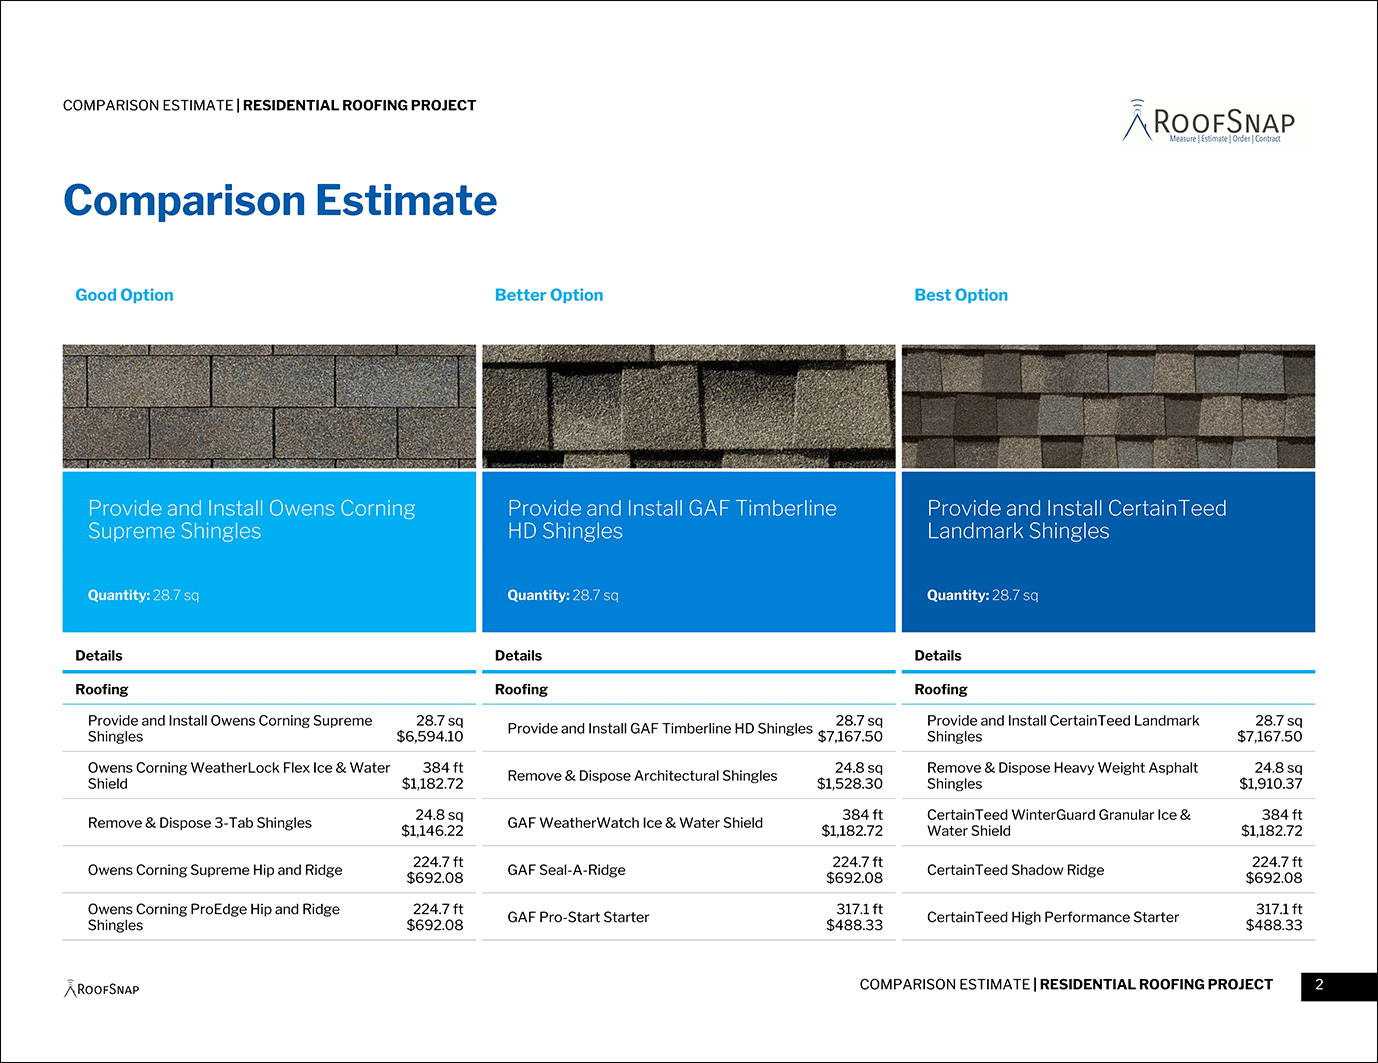 RoofSnap's Modern Comparison Estimate